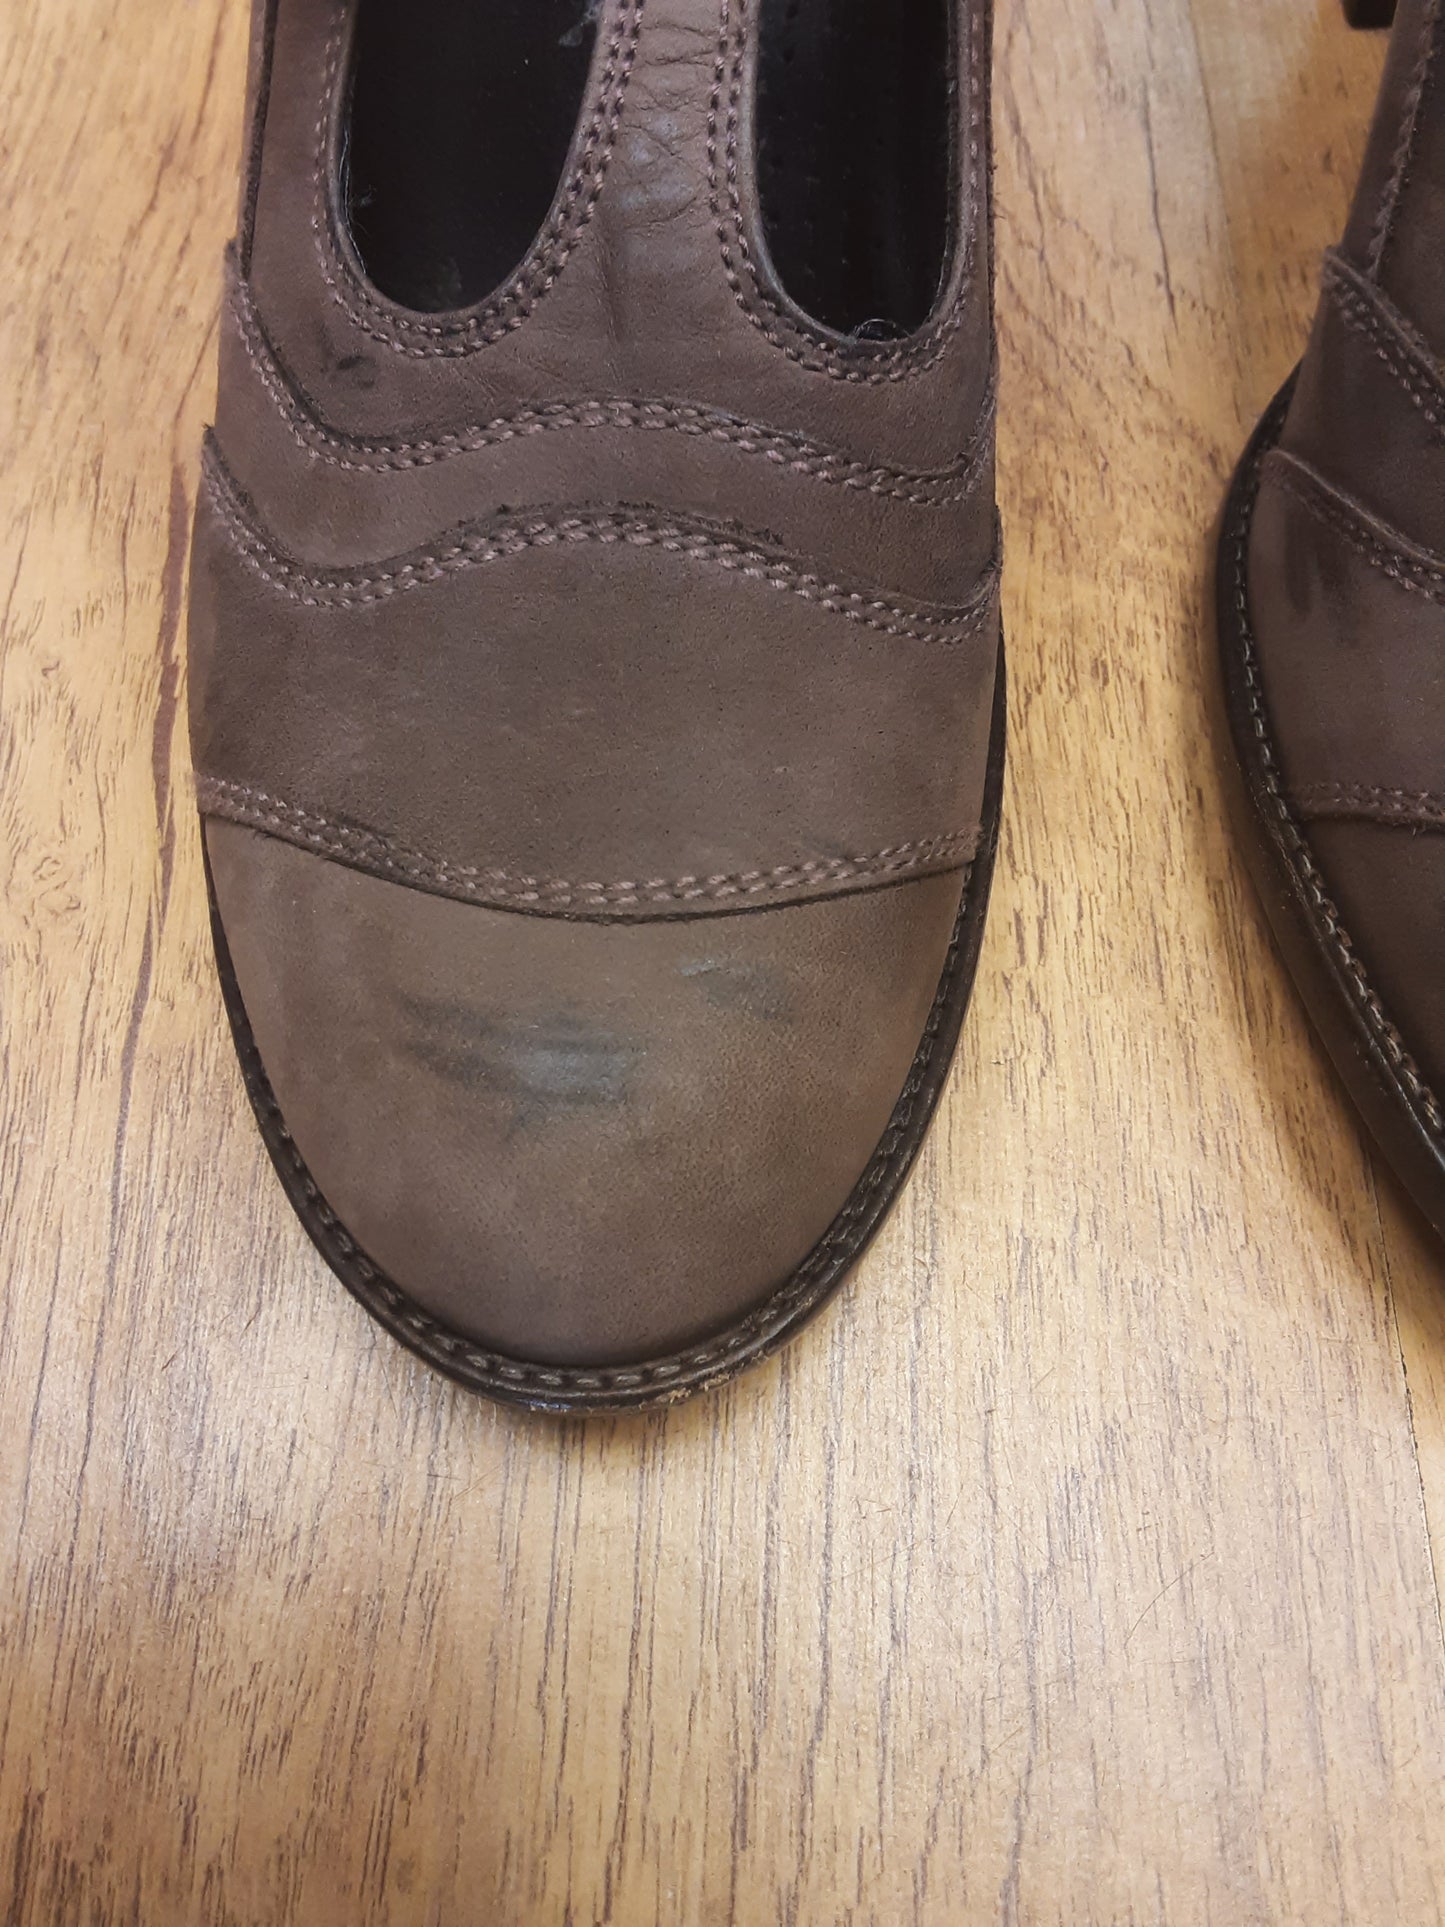 Belstaff Brown T-Bar Heeled Shoes w/Buckles Size UK 4 (EU 37)